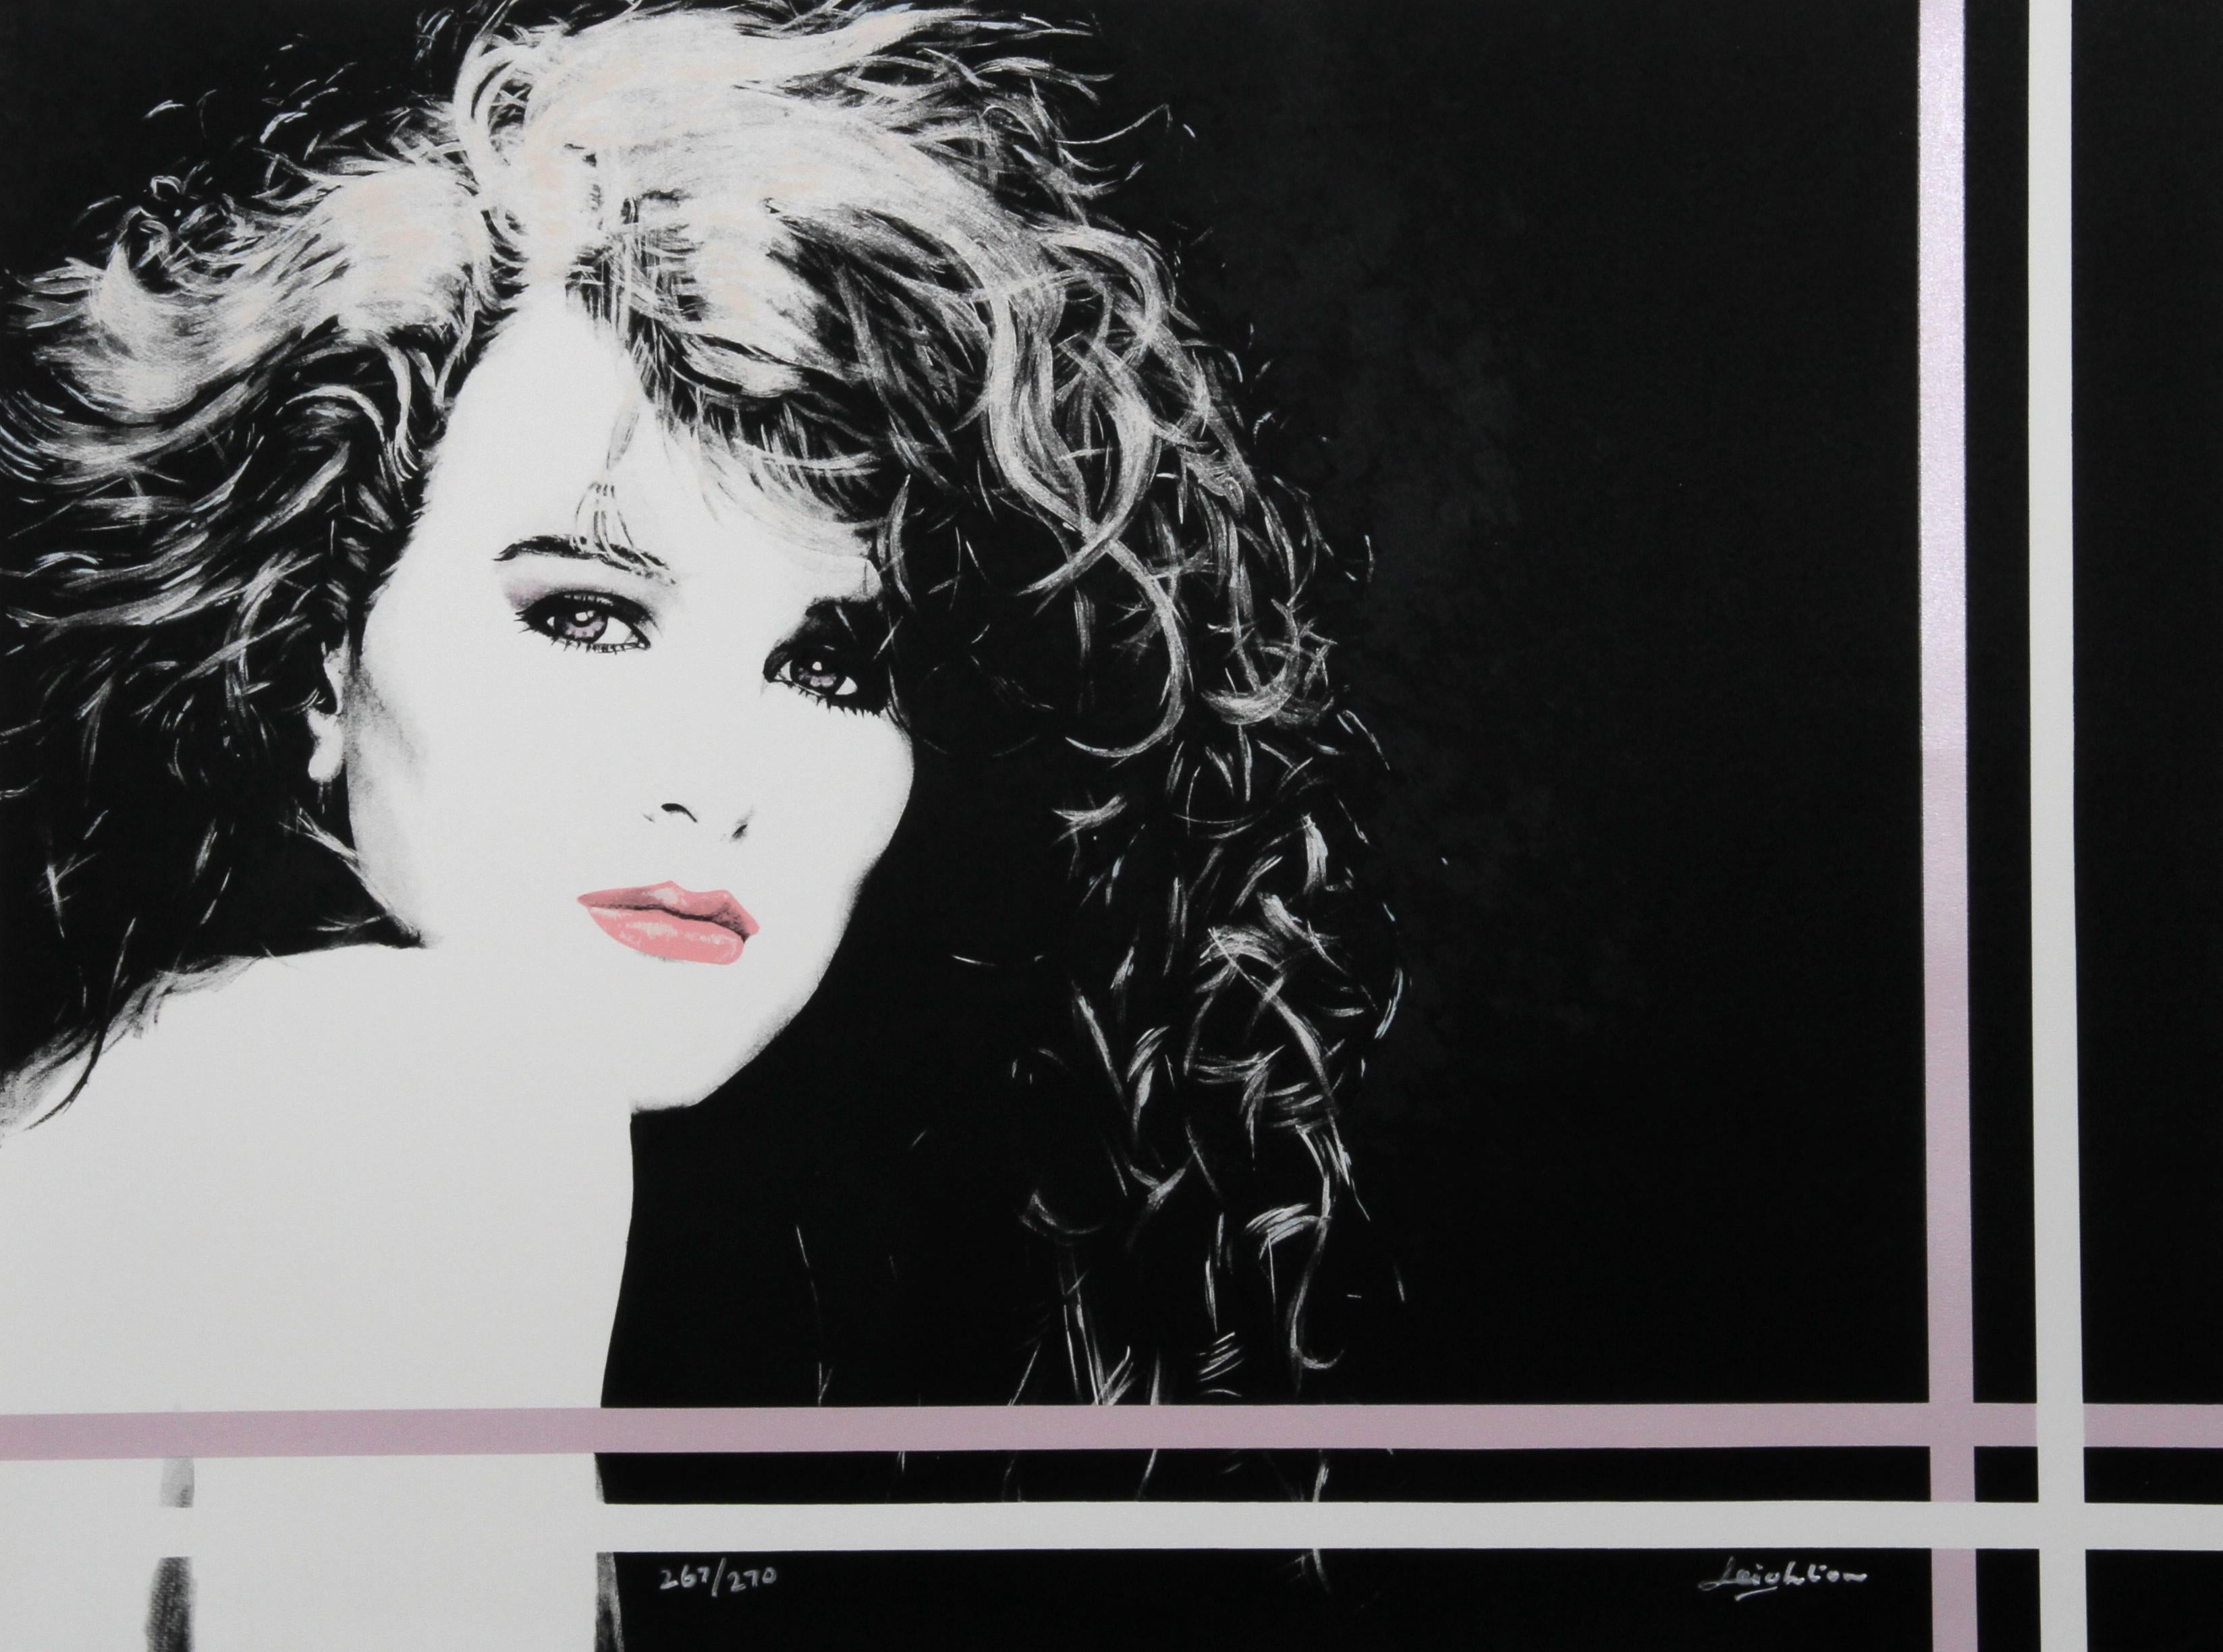 Artistics : Dan Leighton, Américain XXème
Titre : Sheri
Année : vers 1987
Médium : Lithographie, signée et numérotée au crayon
Edition : 267/270
Taille : 30 x 40 in. (76.2 x 101.6 cm)